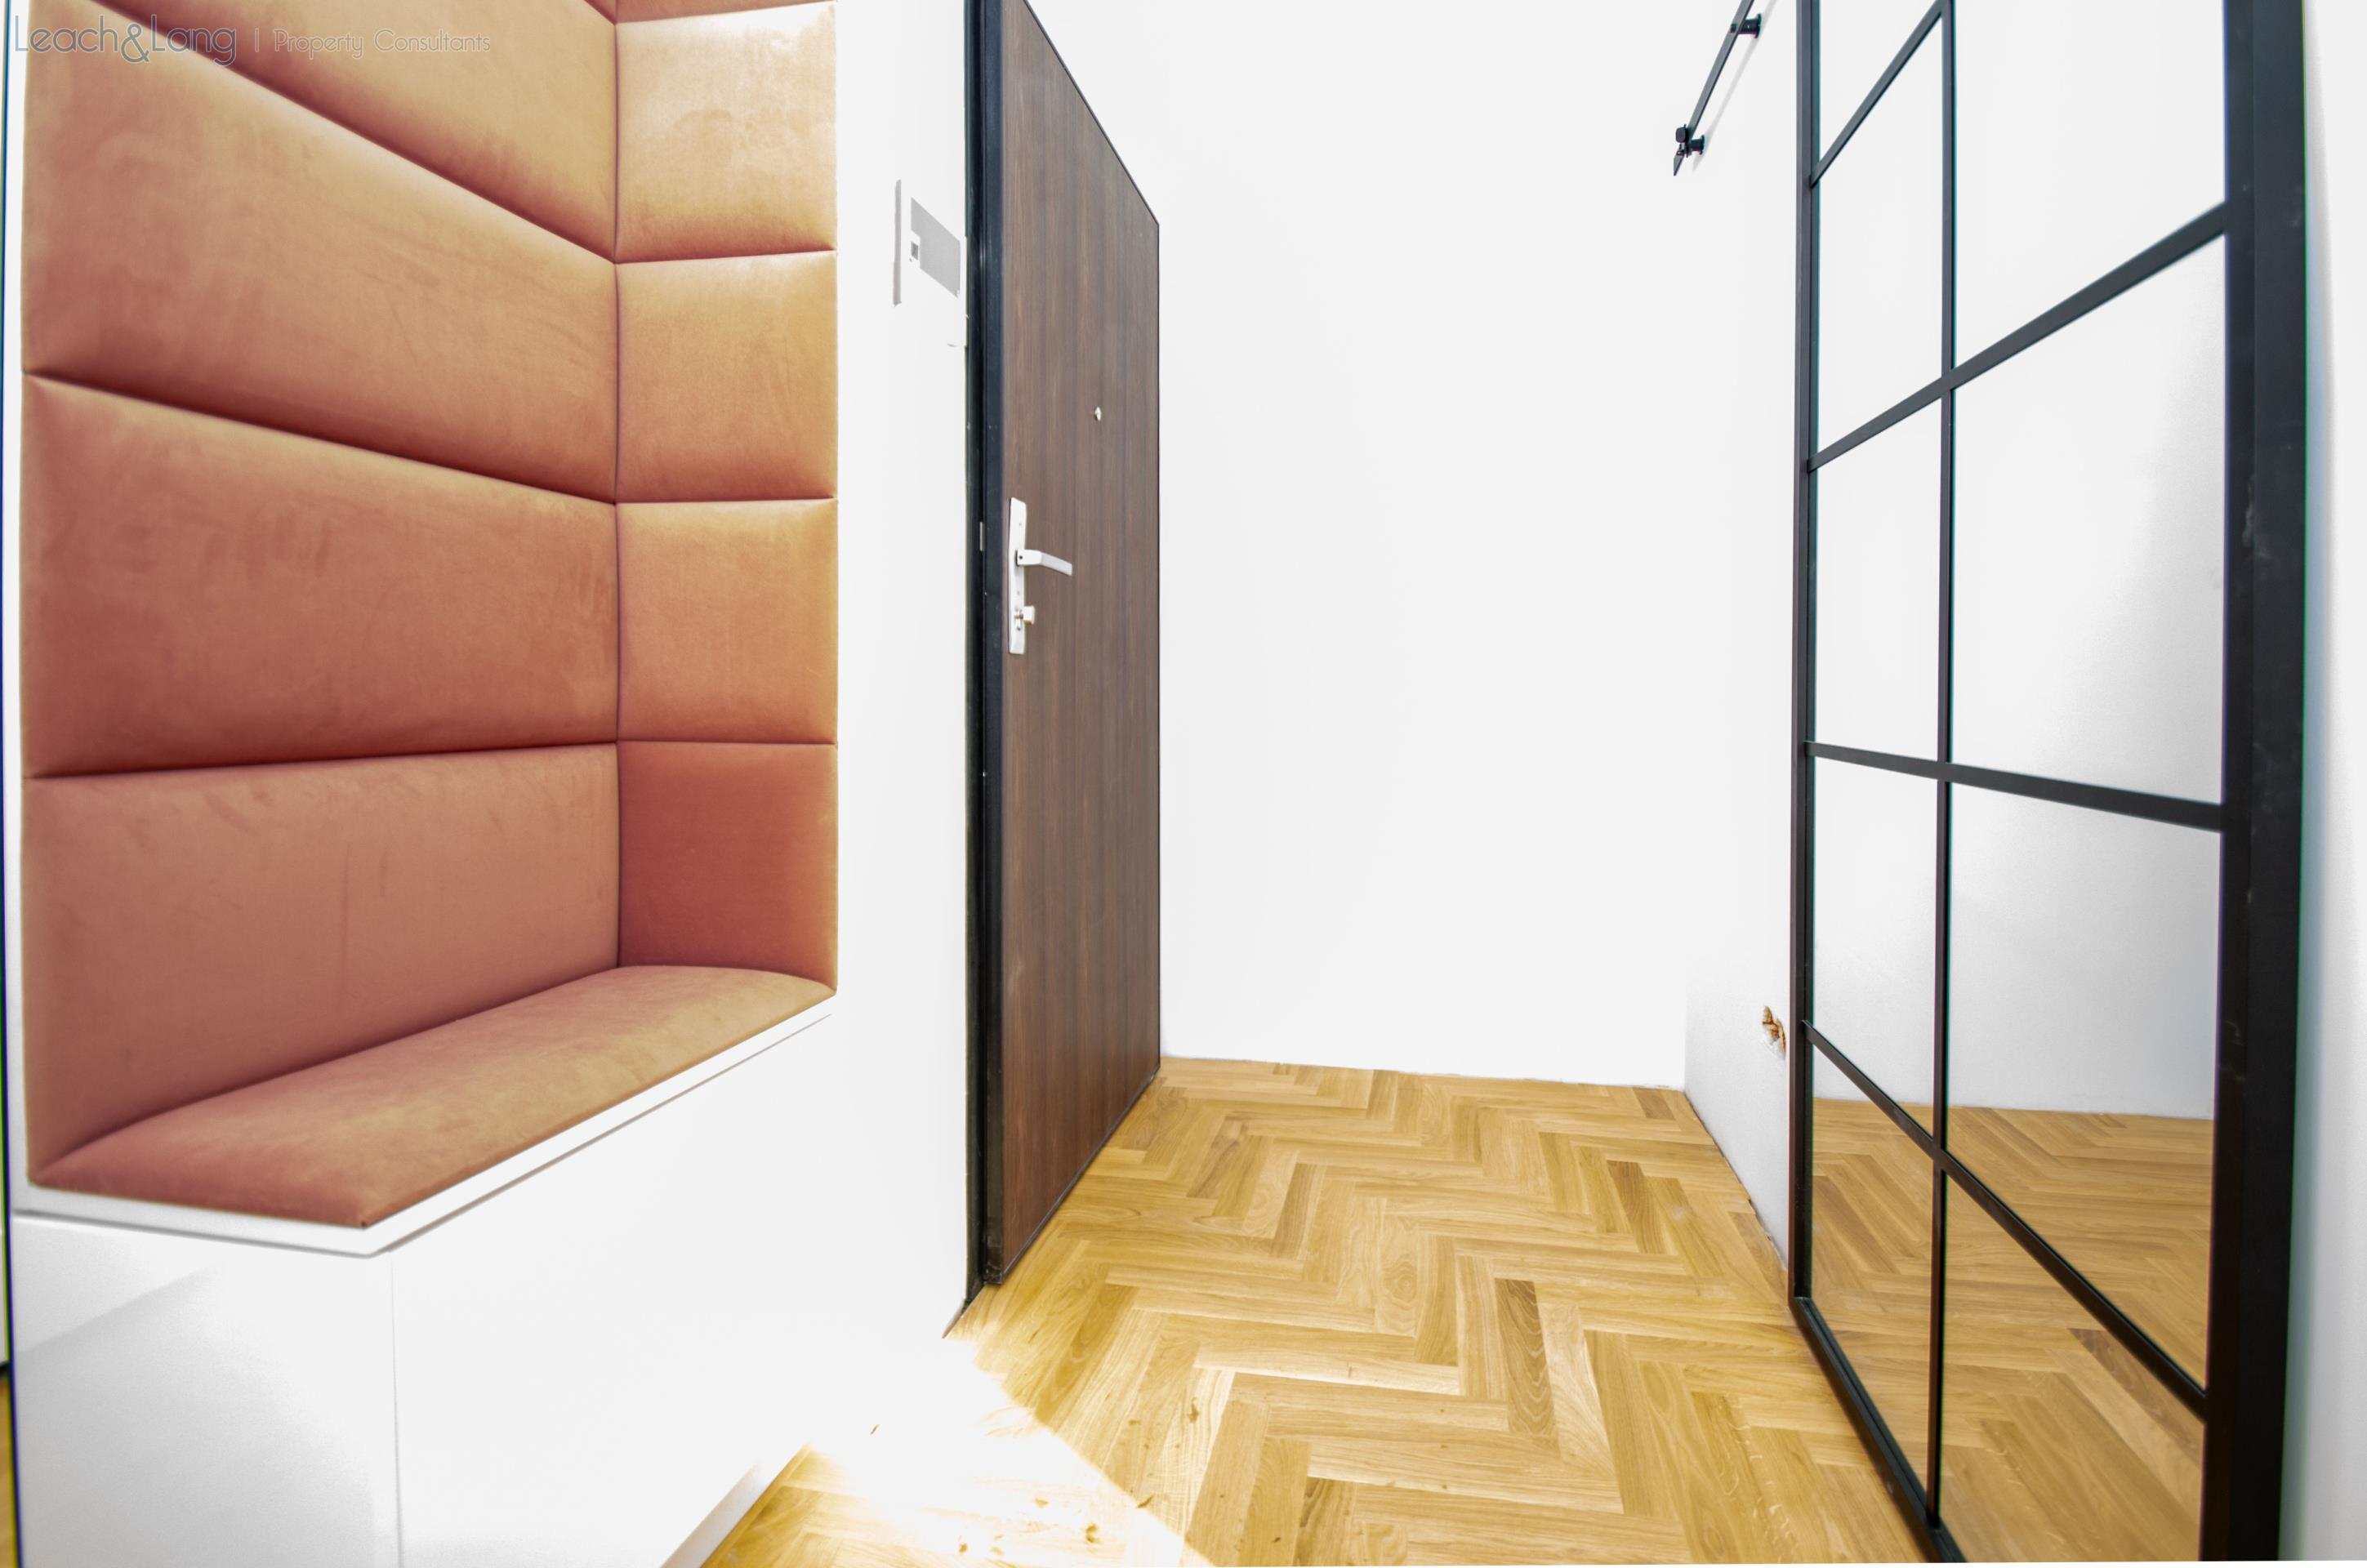 2-bedroom apartment – Wiślane Tarasy 2.0